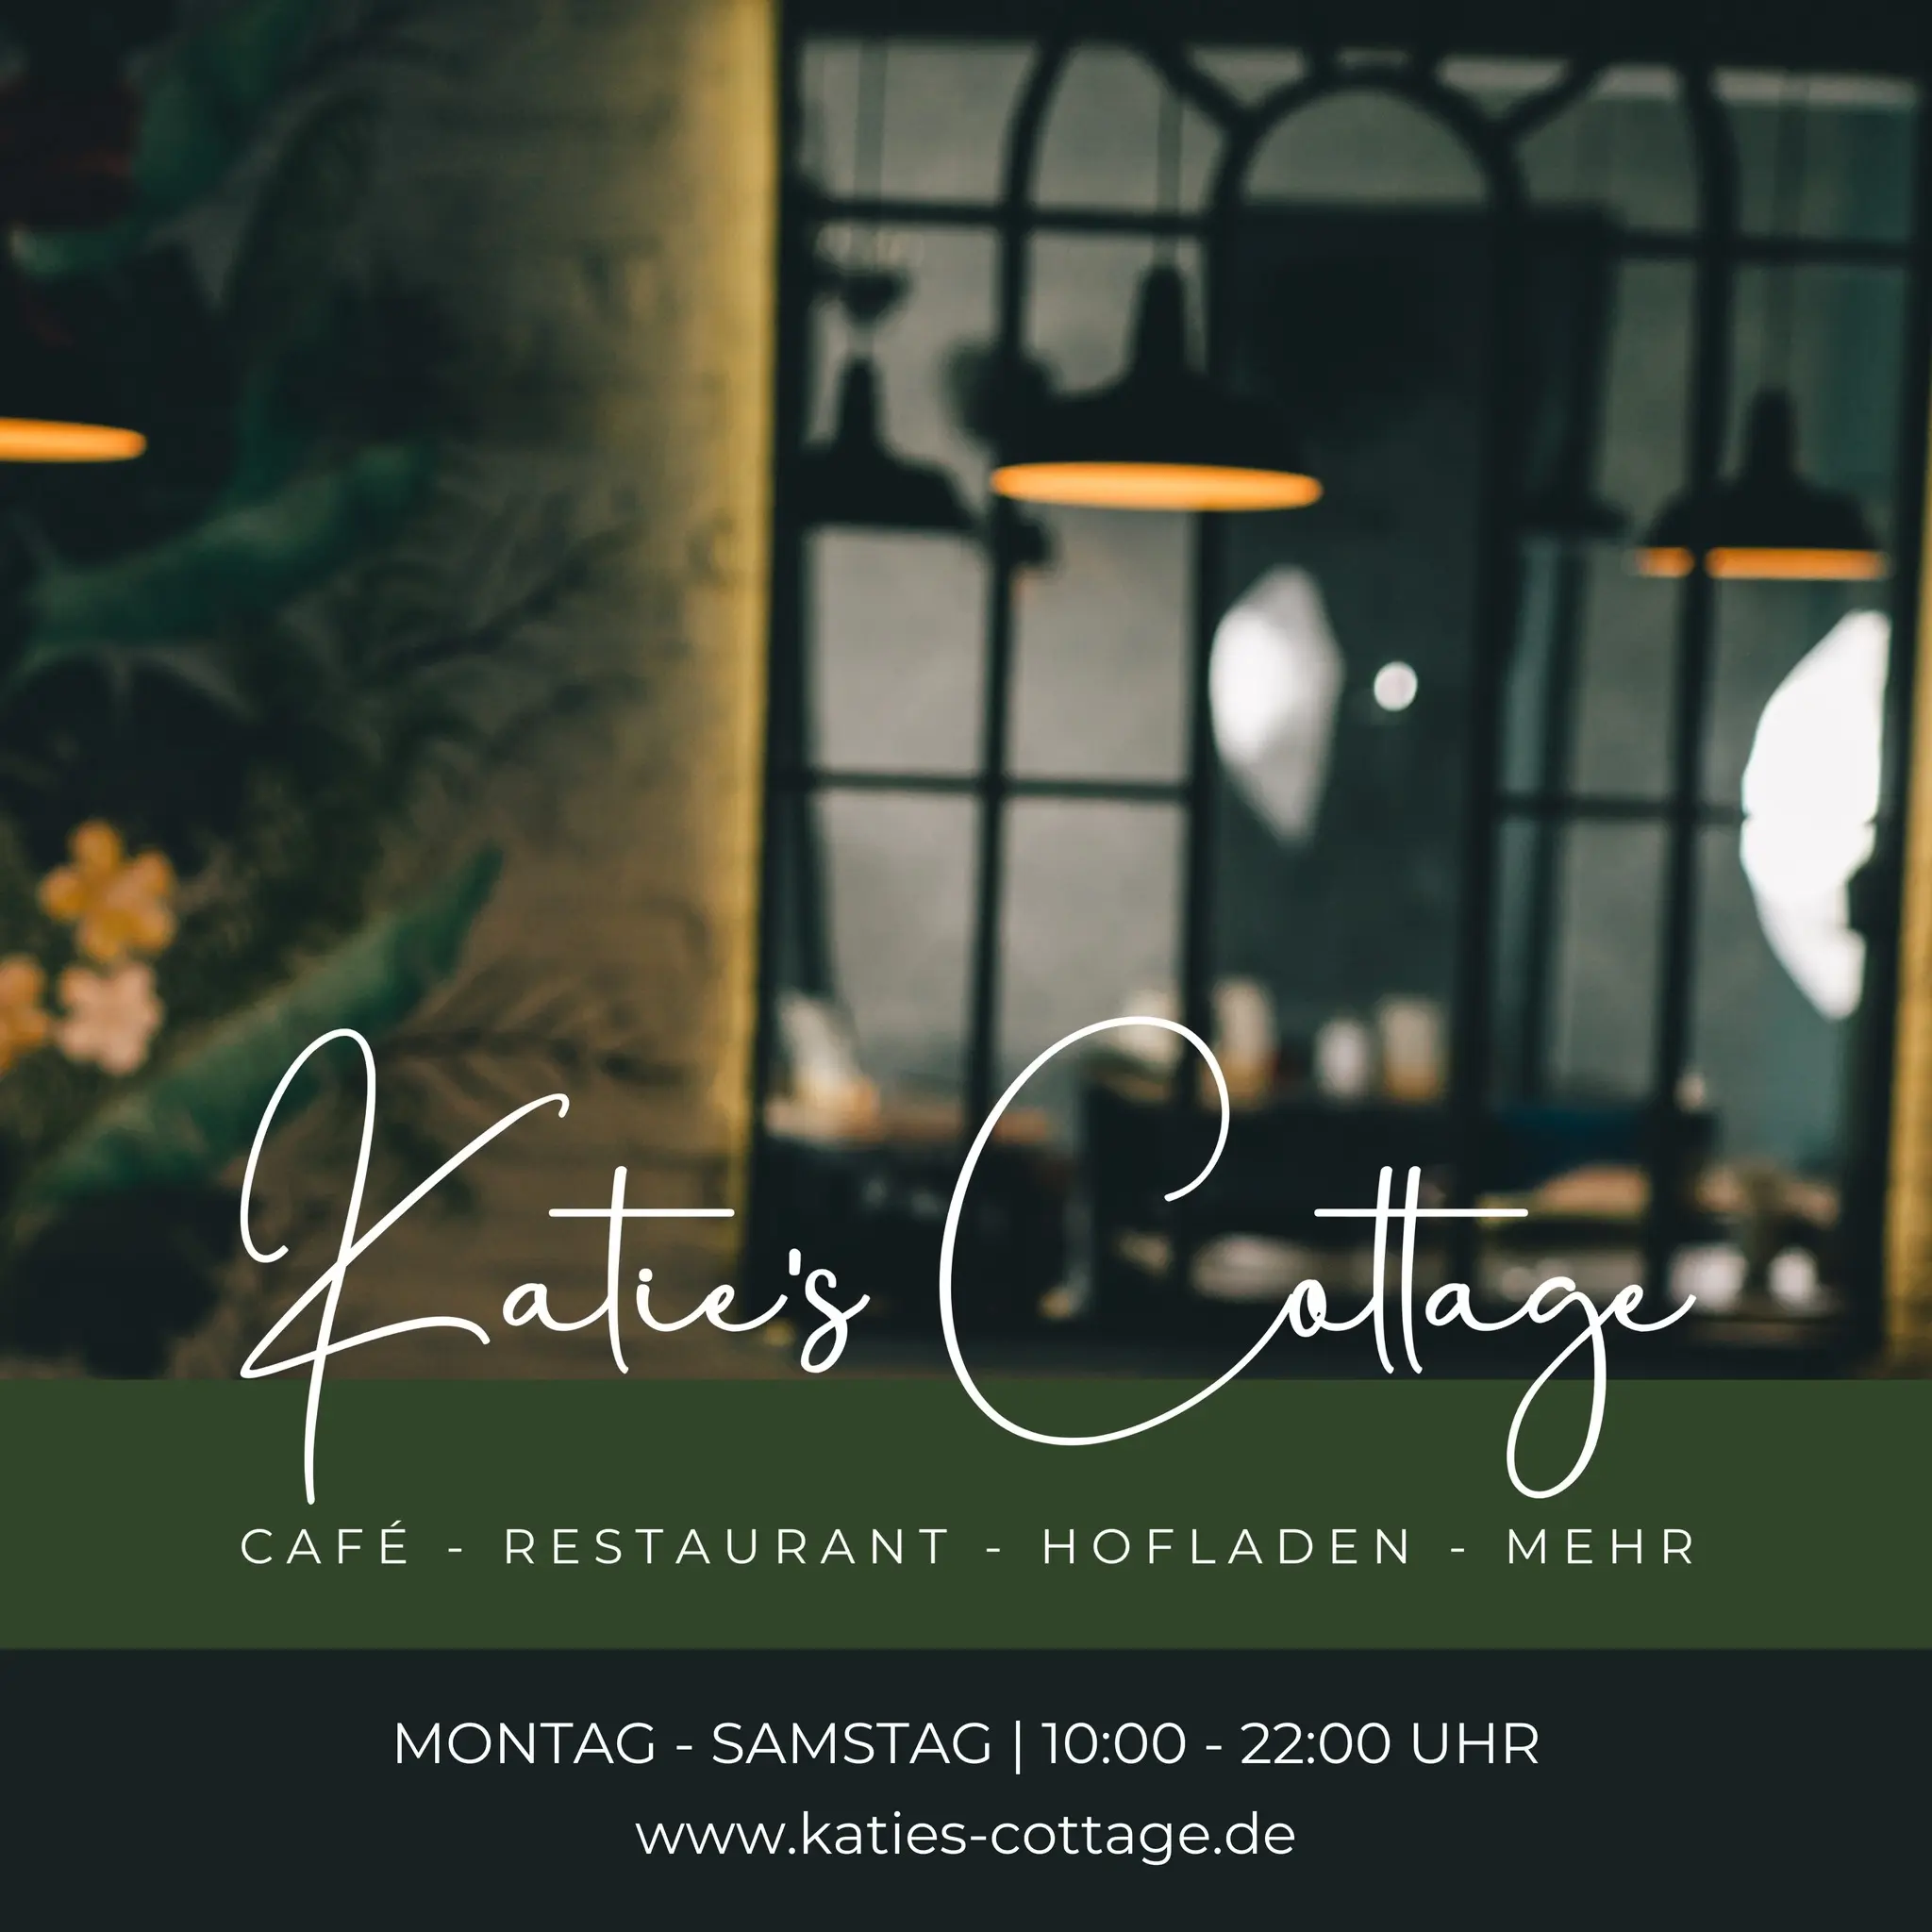 Katie's Cottage Café - Restaurant - Hofladen & mehr